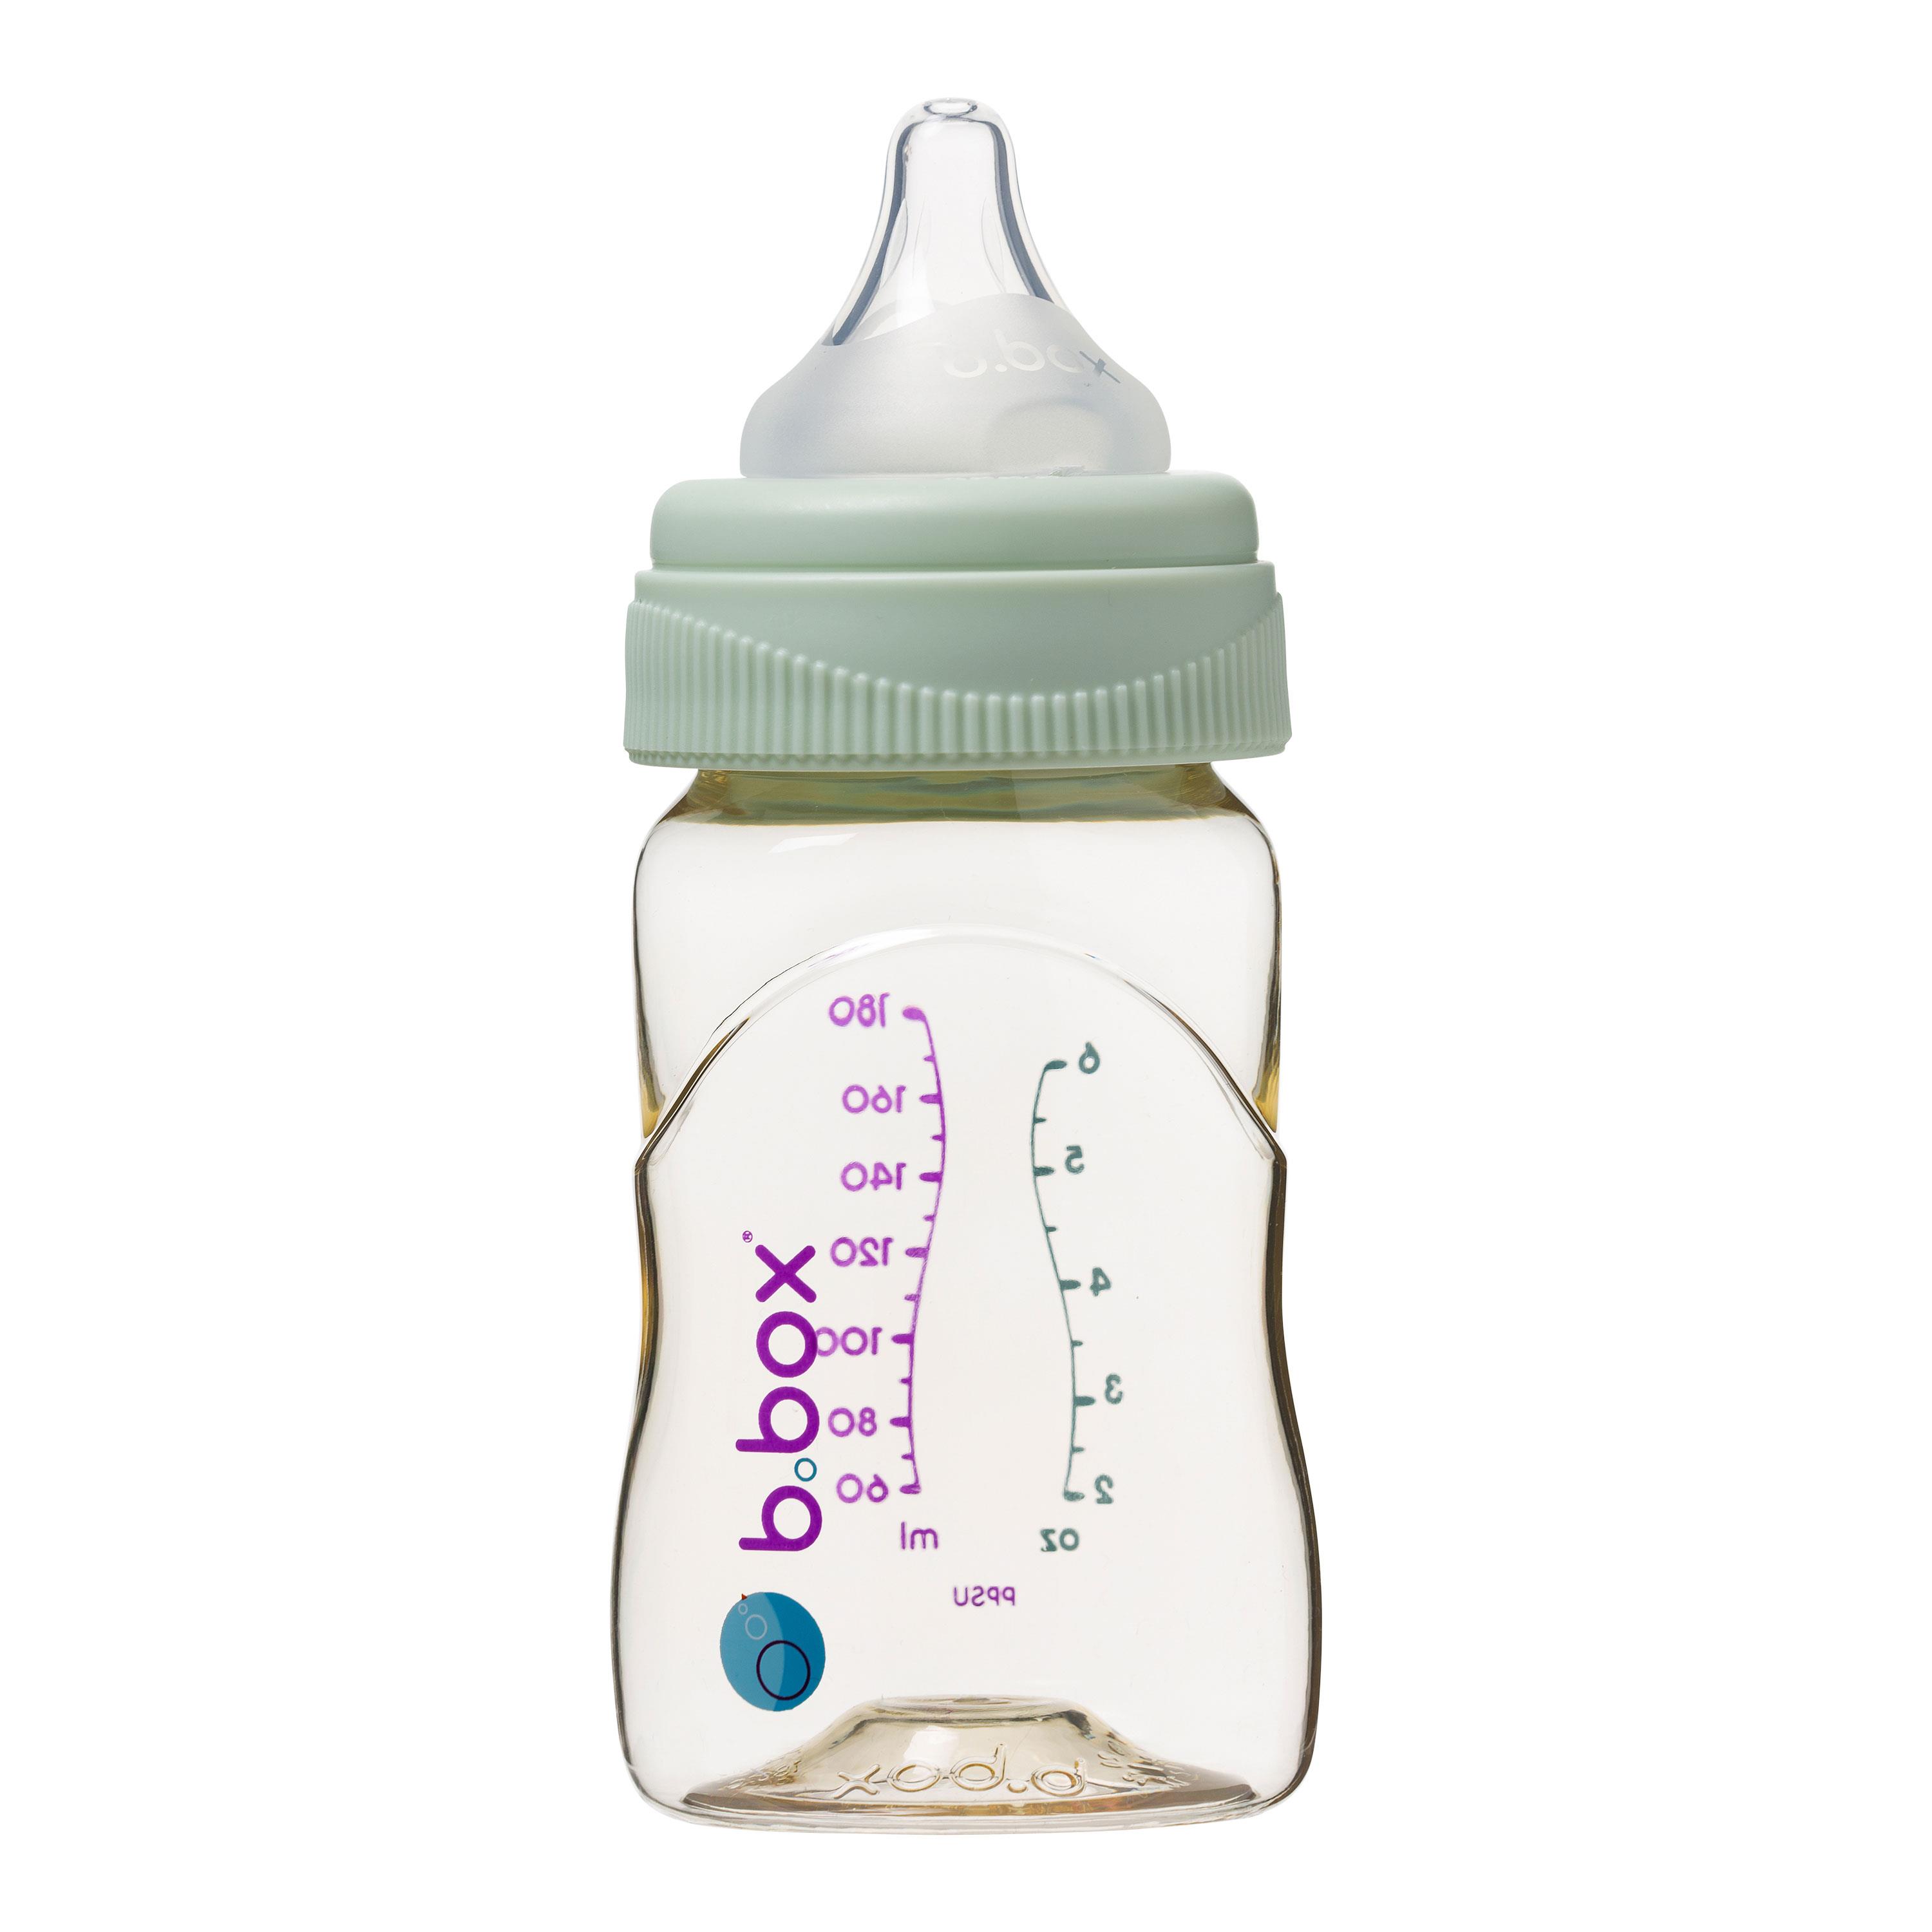 Butelka do karmienia niemowląt marki b.box